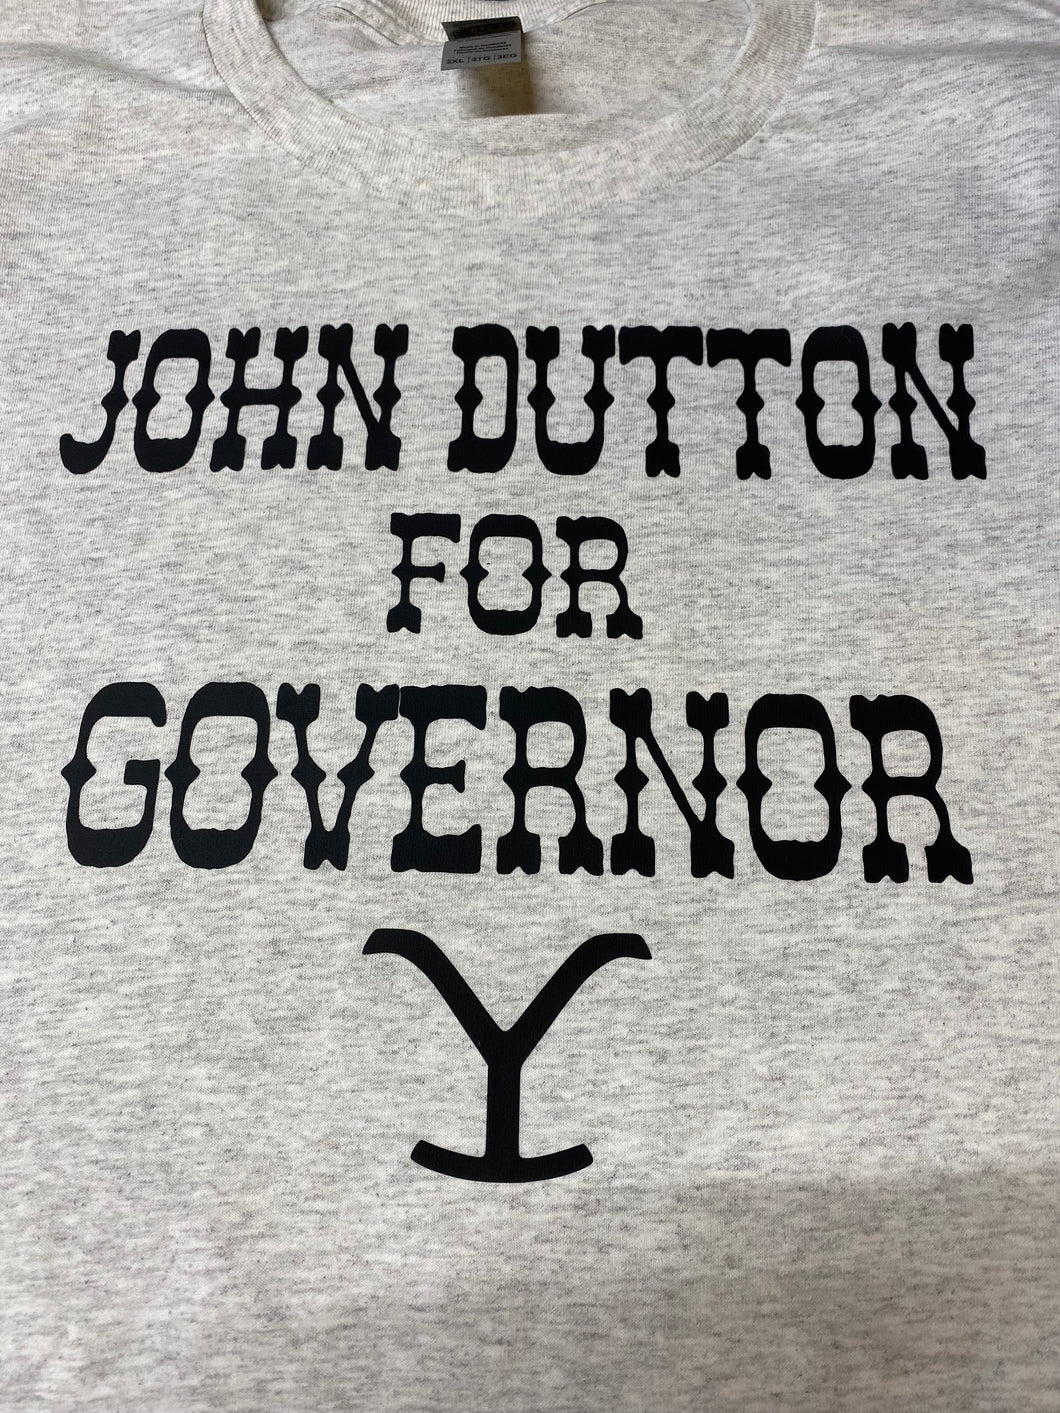 John Dutton for President Shirt